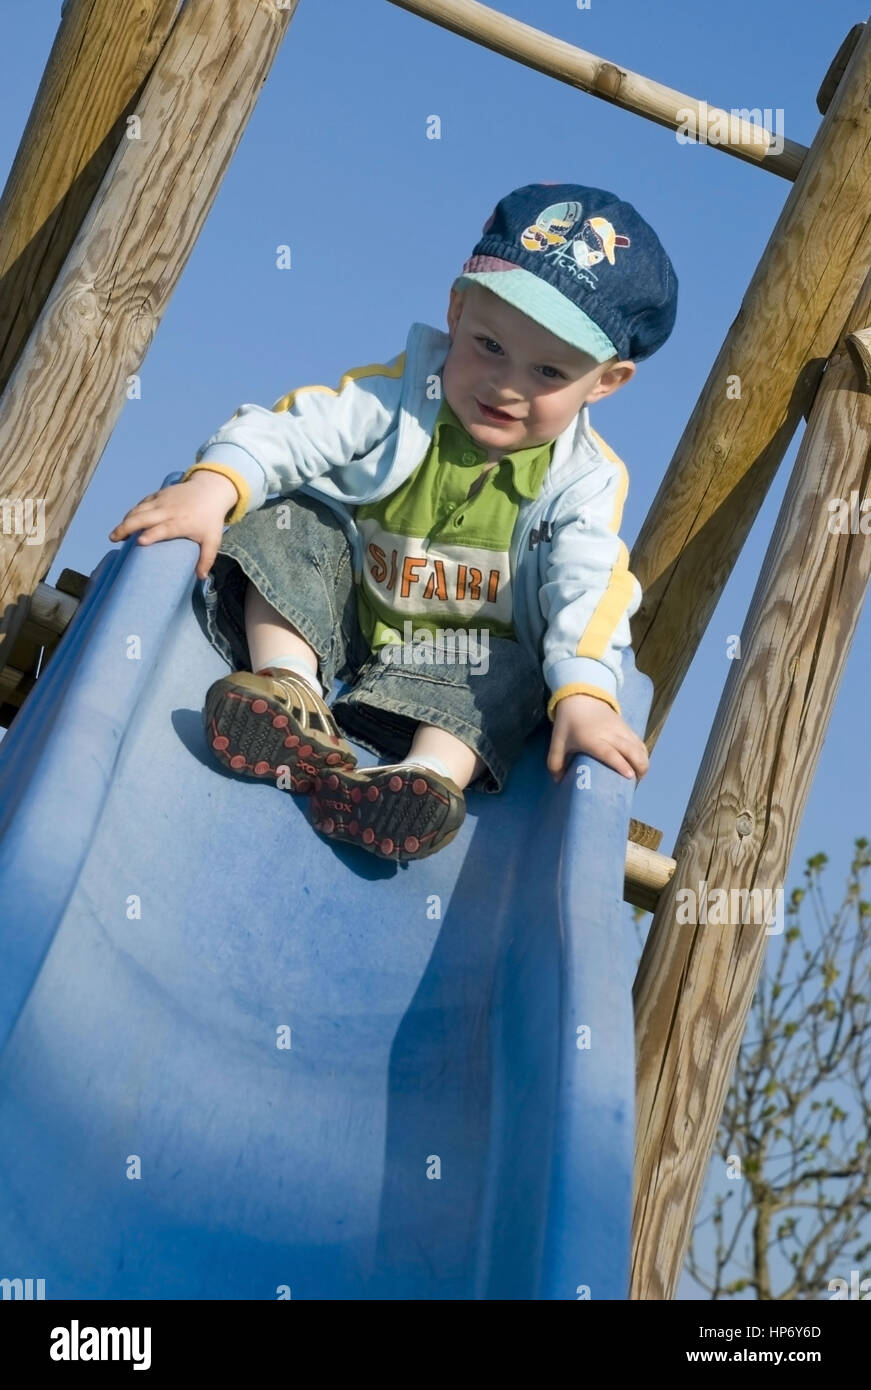 Junge auf Rutsche am Spielplatz - boy on slide Stock Photo